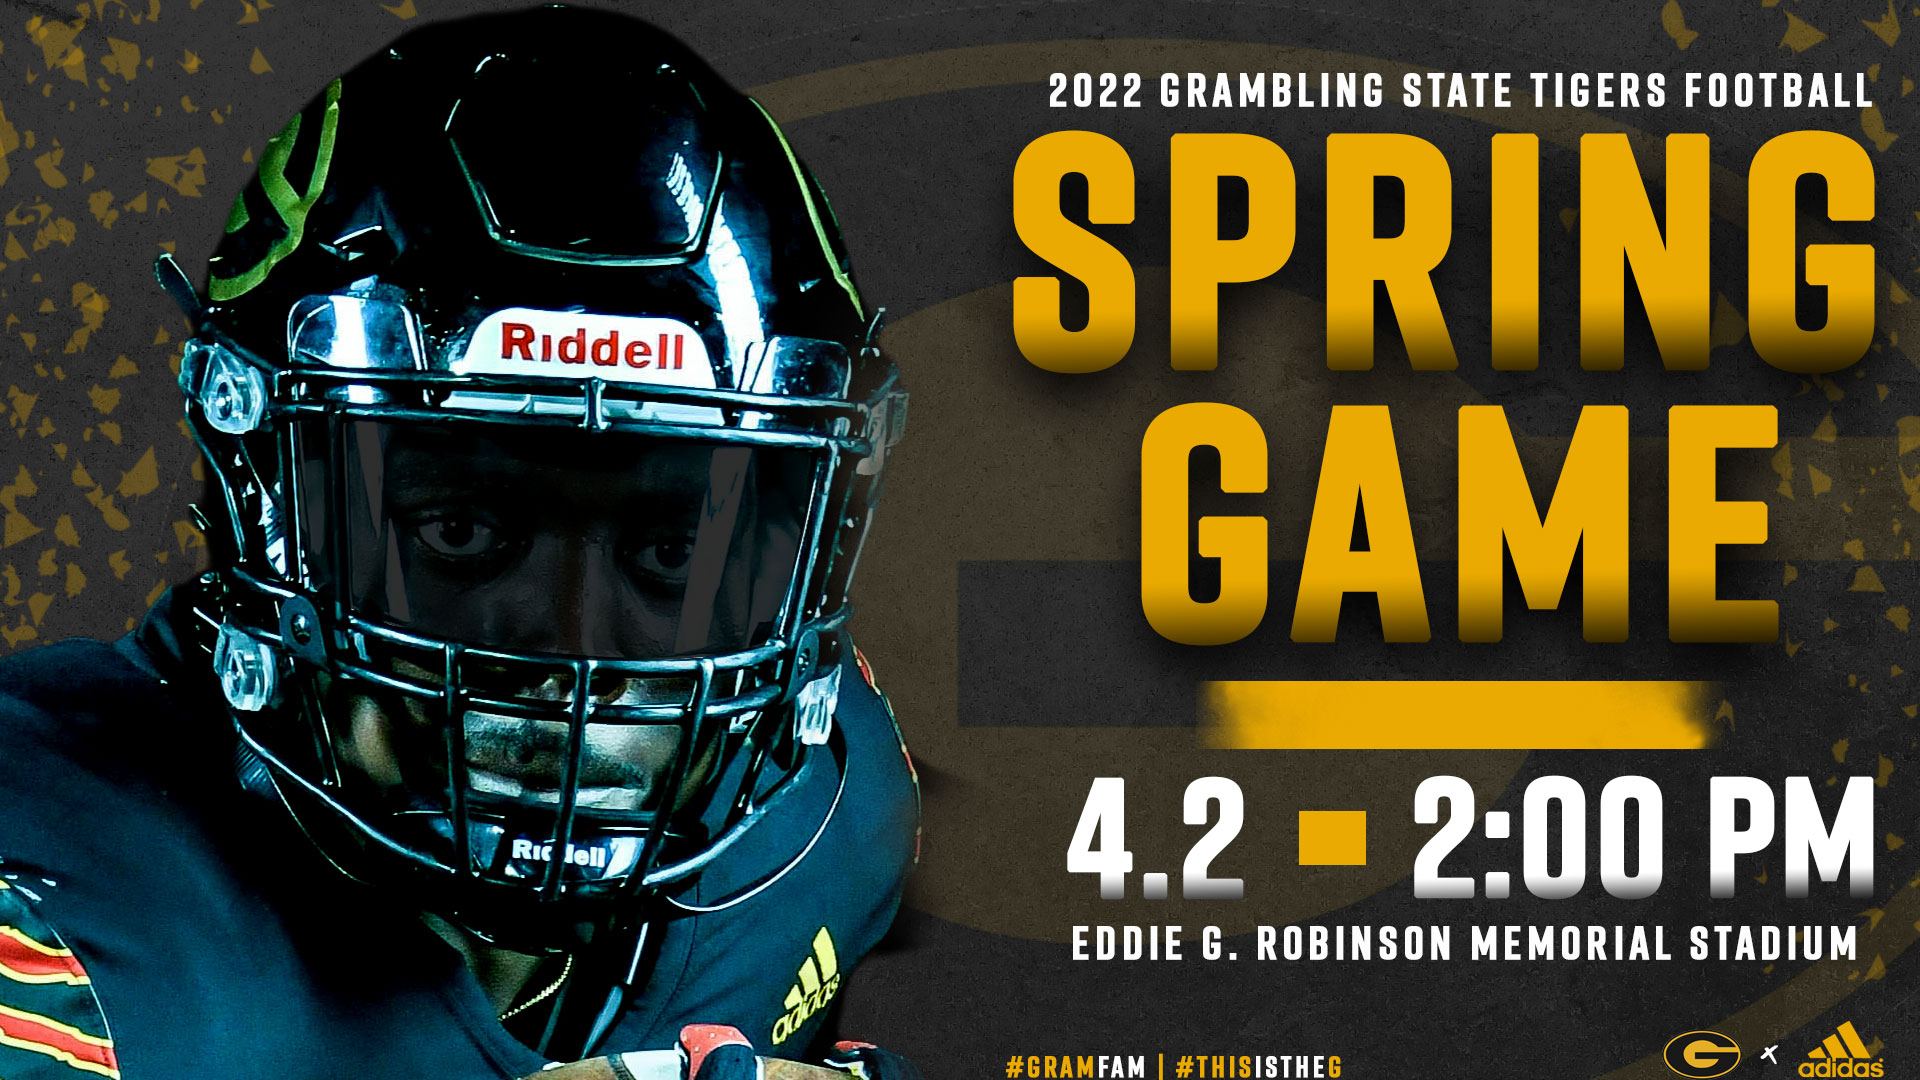 Grambling State Set to Play Spring Game on April 2 